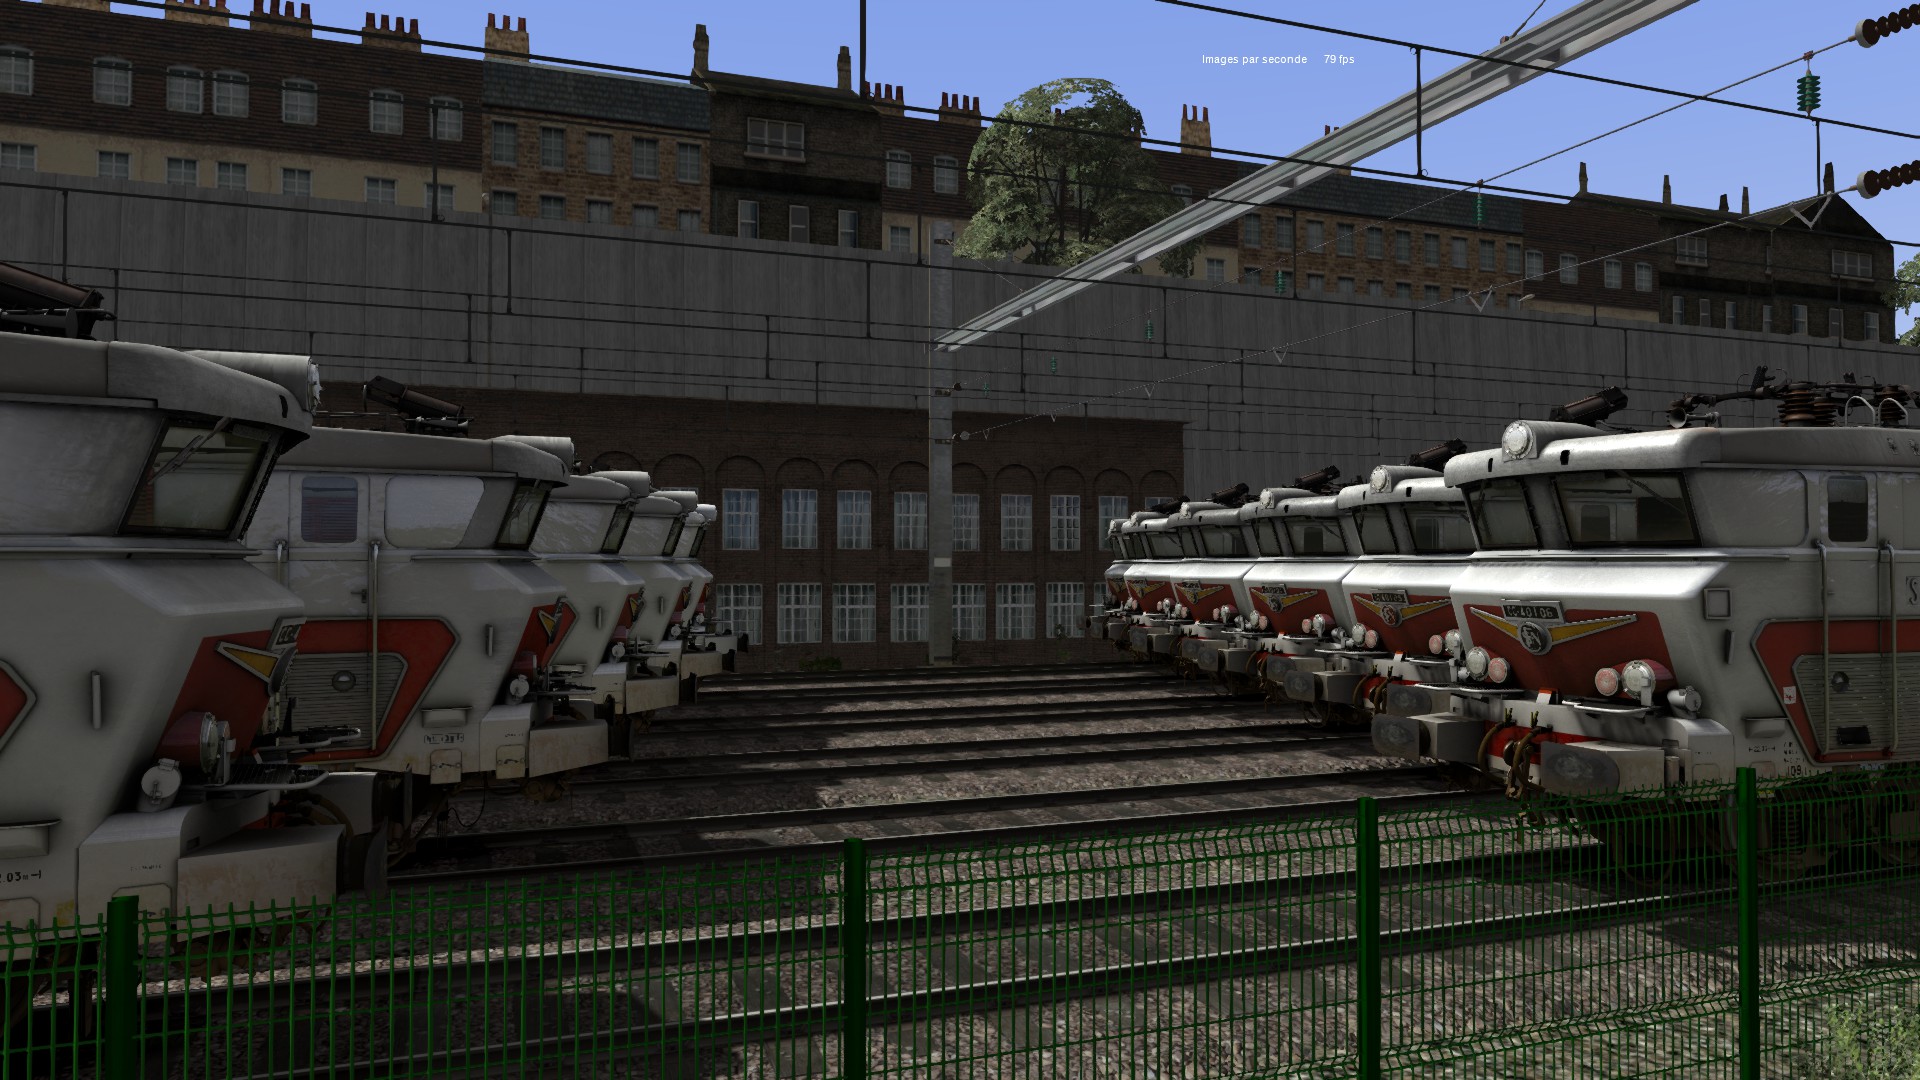 All locomotives